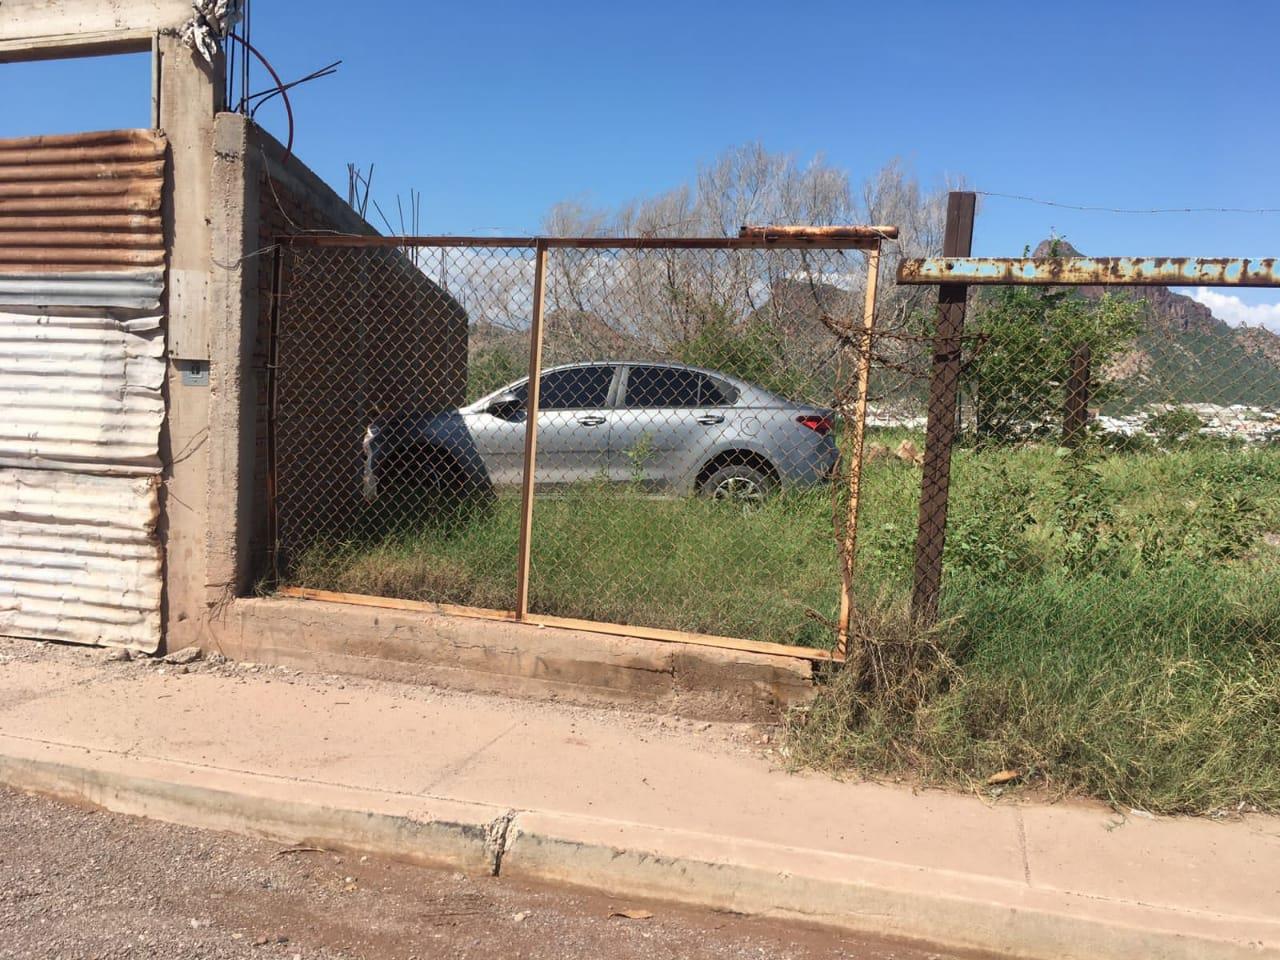 Se roba el carro de su ex, inicia persecución y se estrella contra una barda en Guaymas